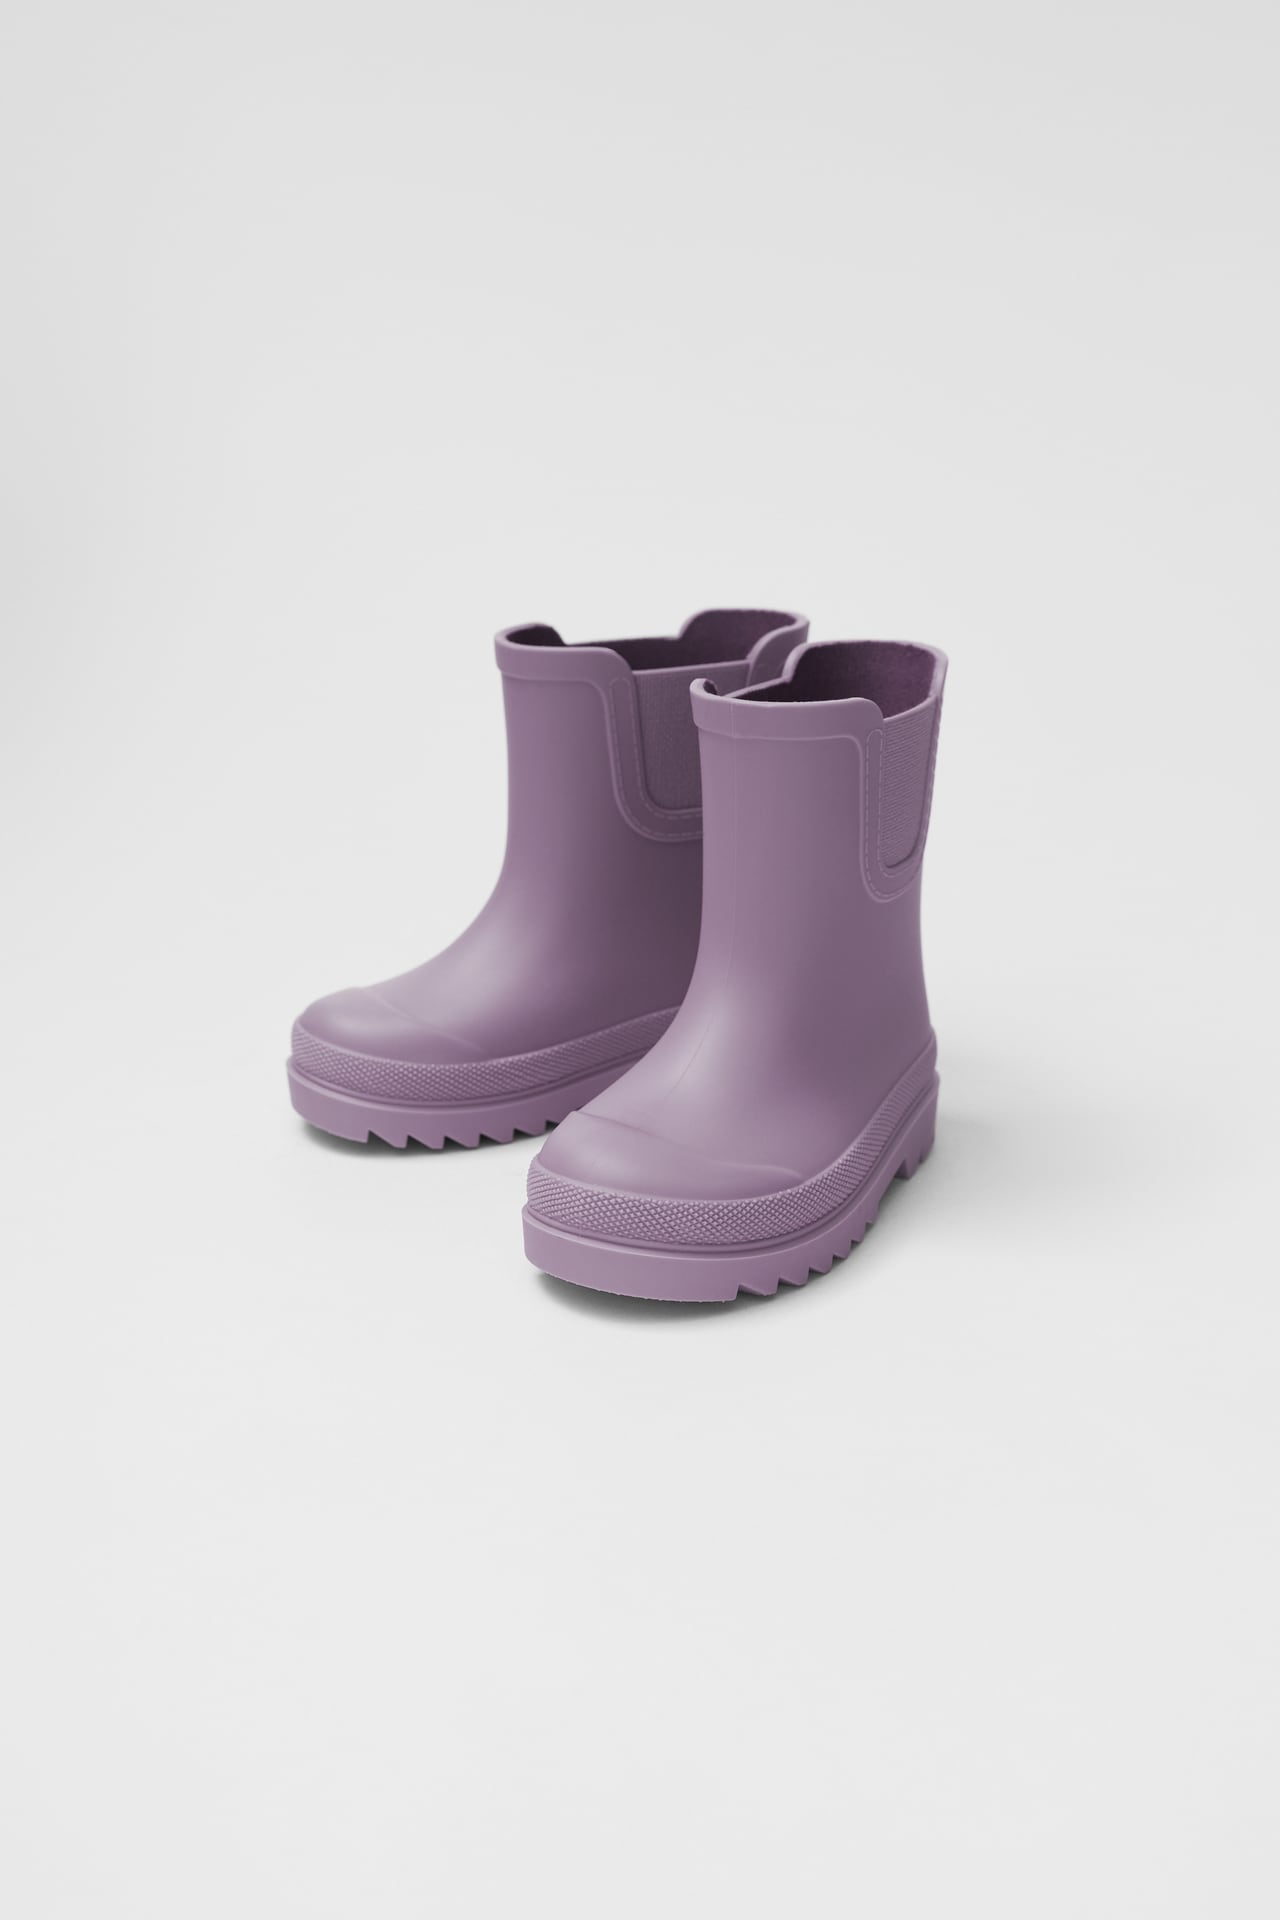 Violet regenlaarzen van de Zara | Tips regenlaarzen voor meisjes